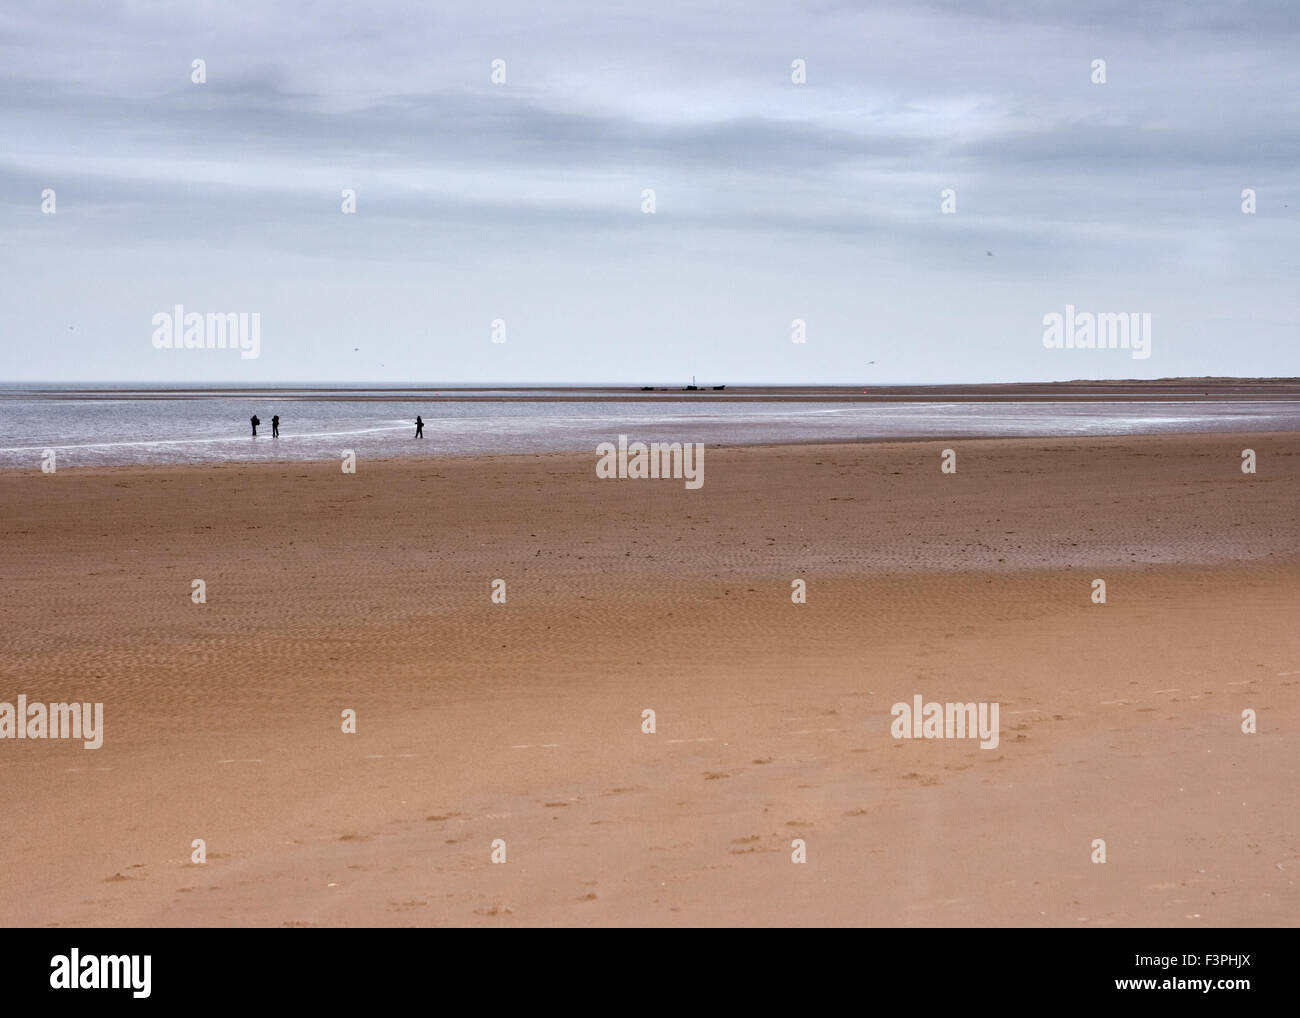 Vast empty beach shoreline and horizon with distant figures Stock Photo